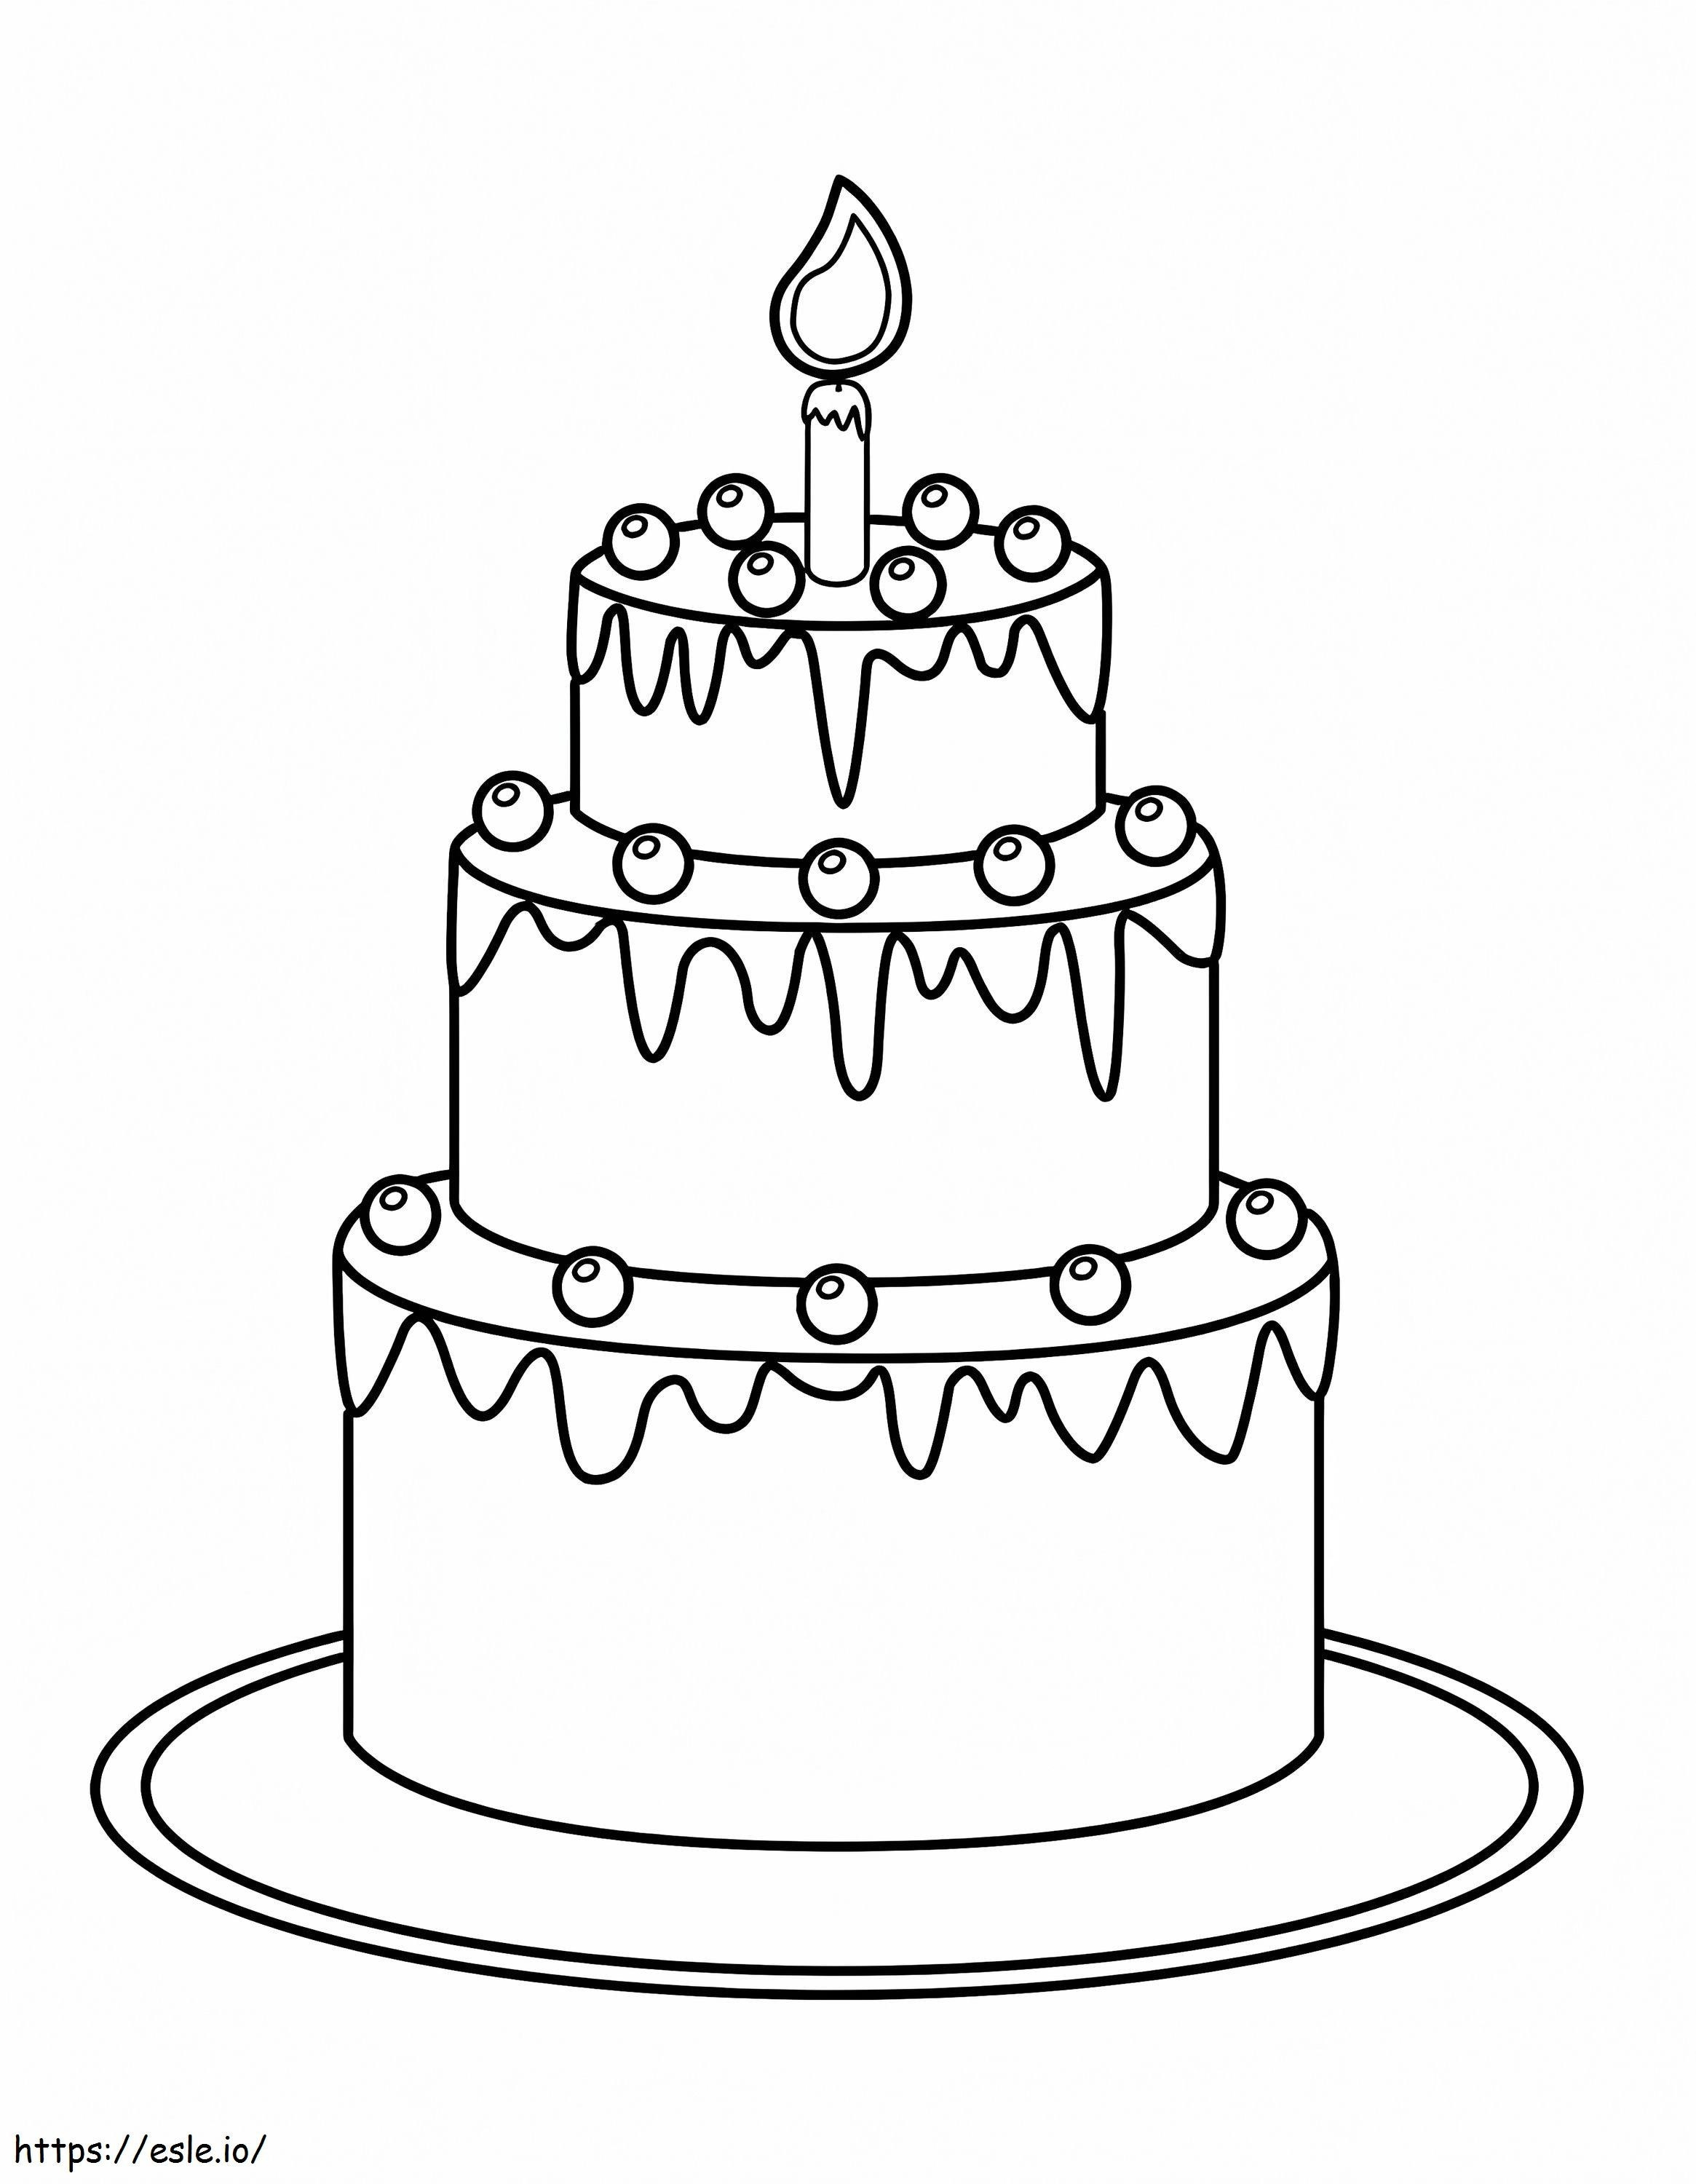 Pagina da colorare di torta di compleanno da colorare